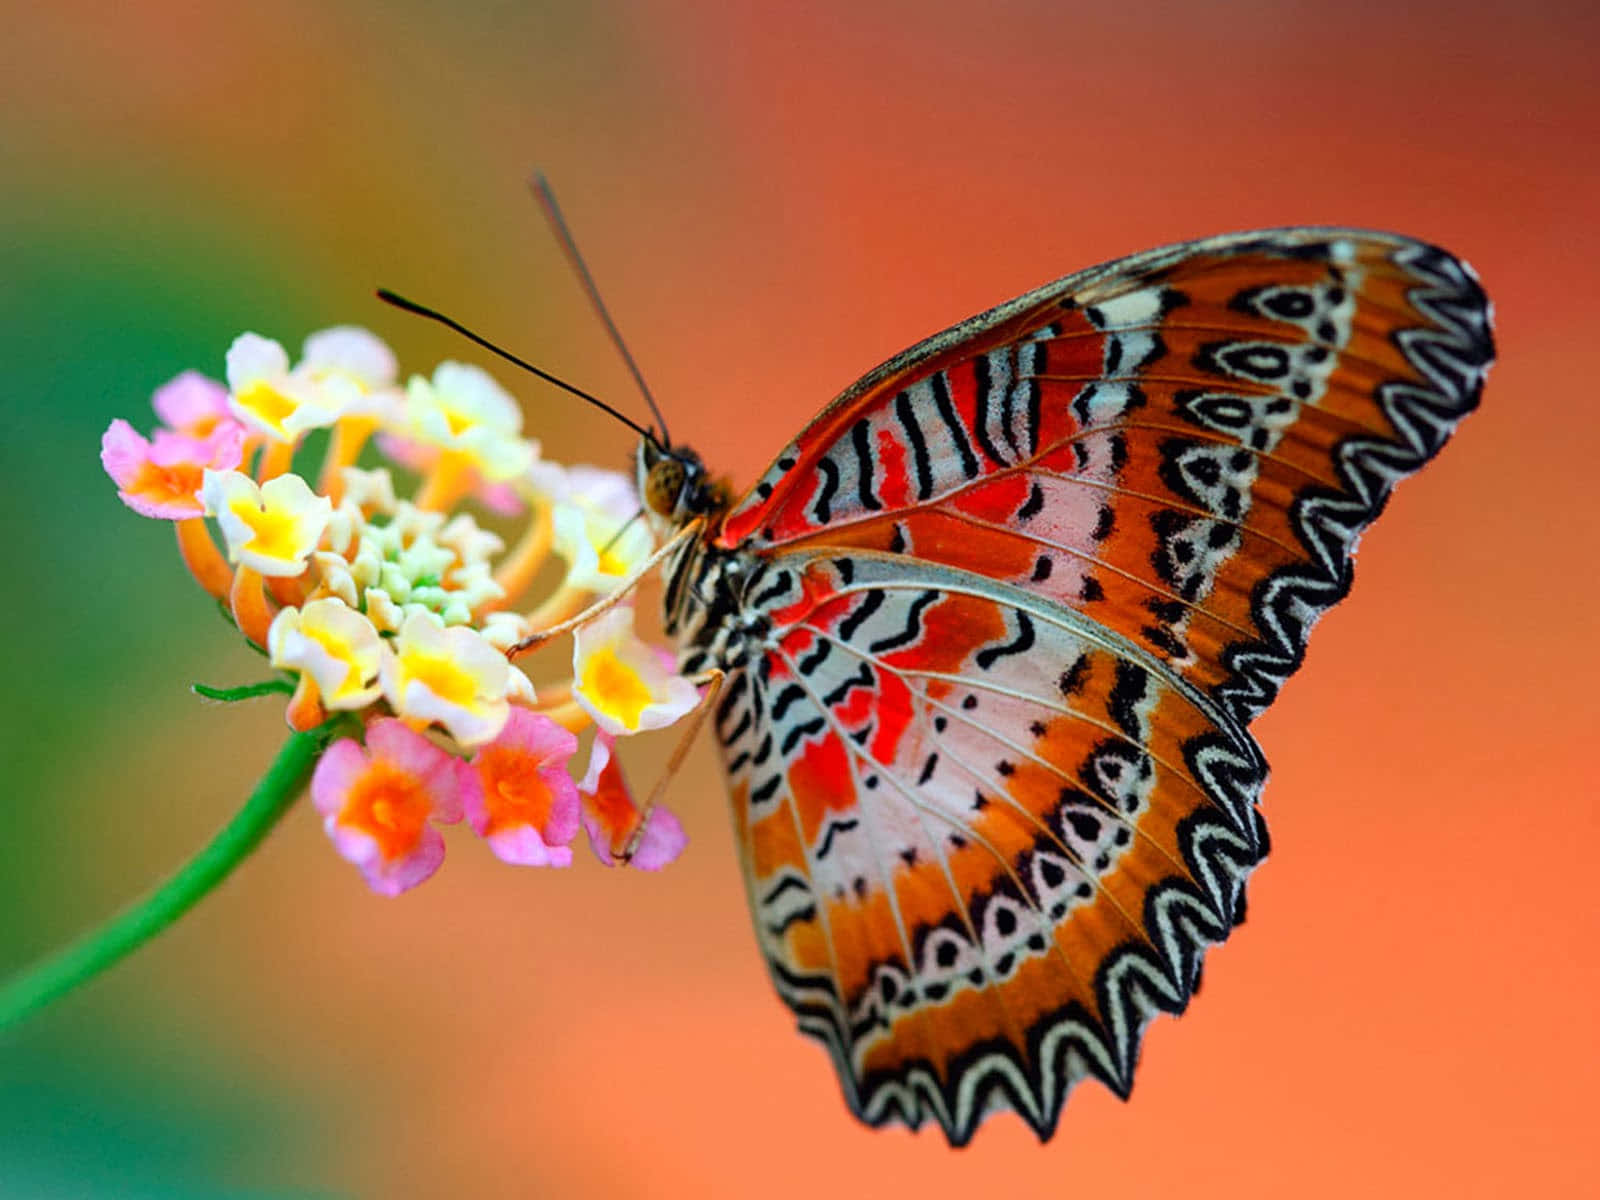 Watch in awe as butterflies flutter by! Wallpaper